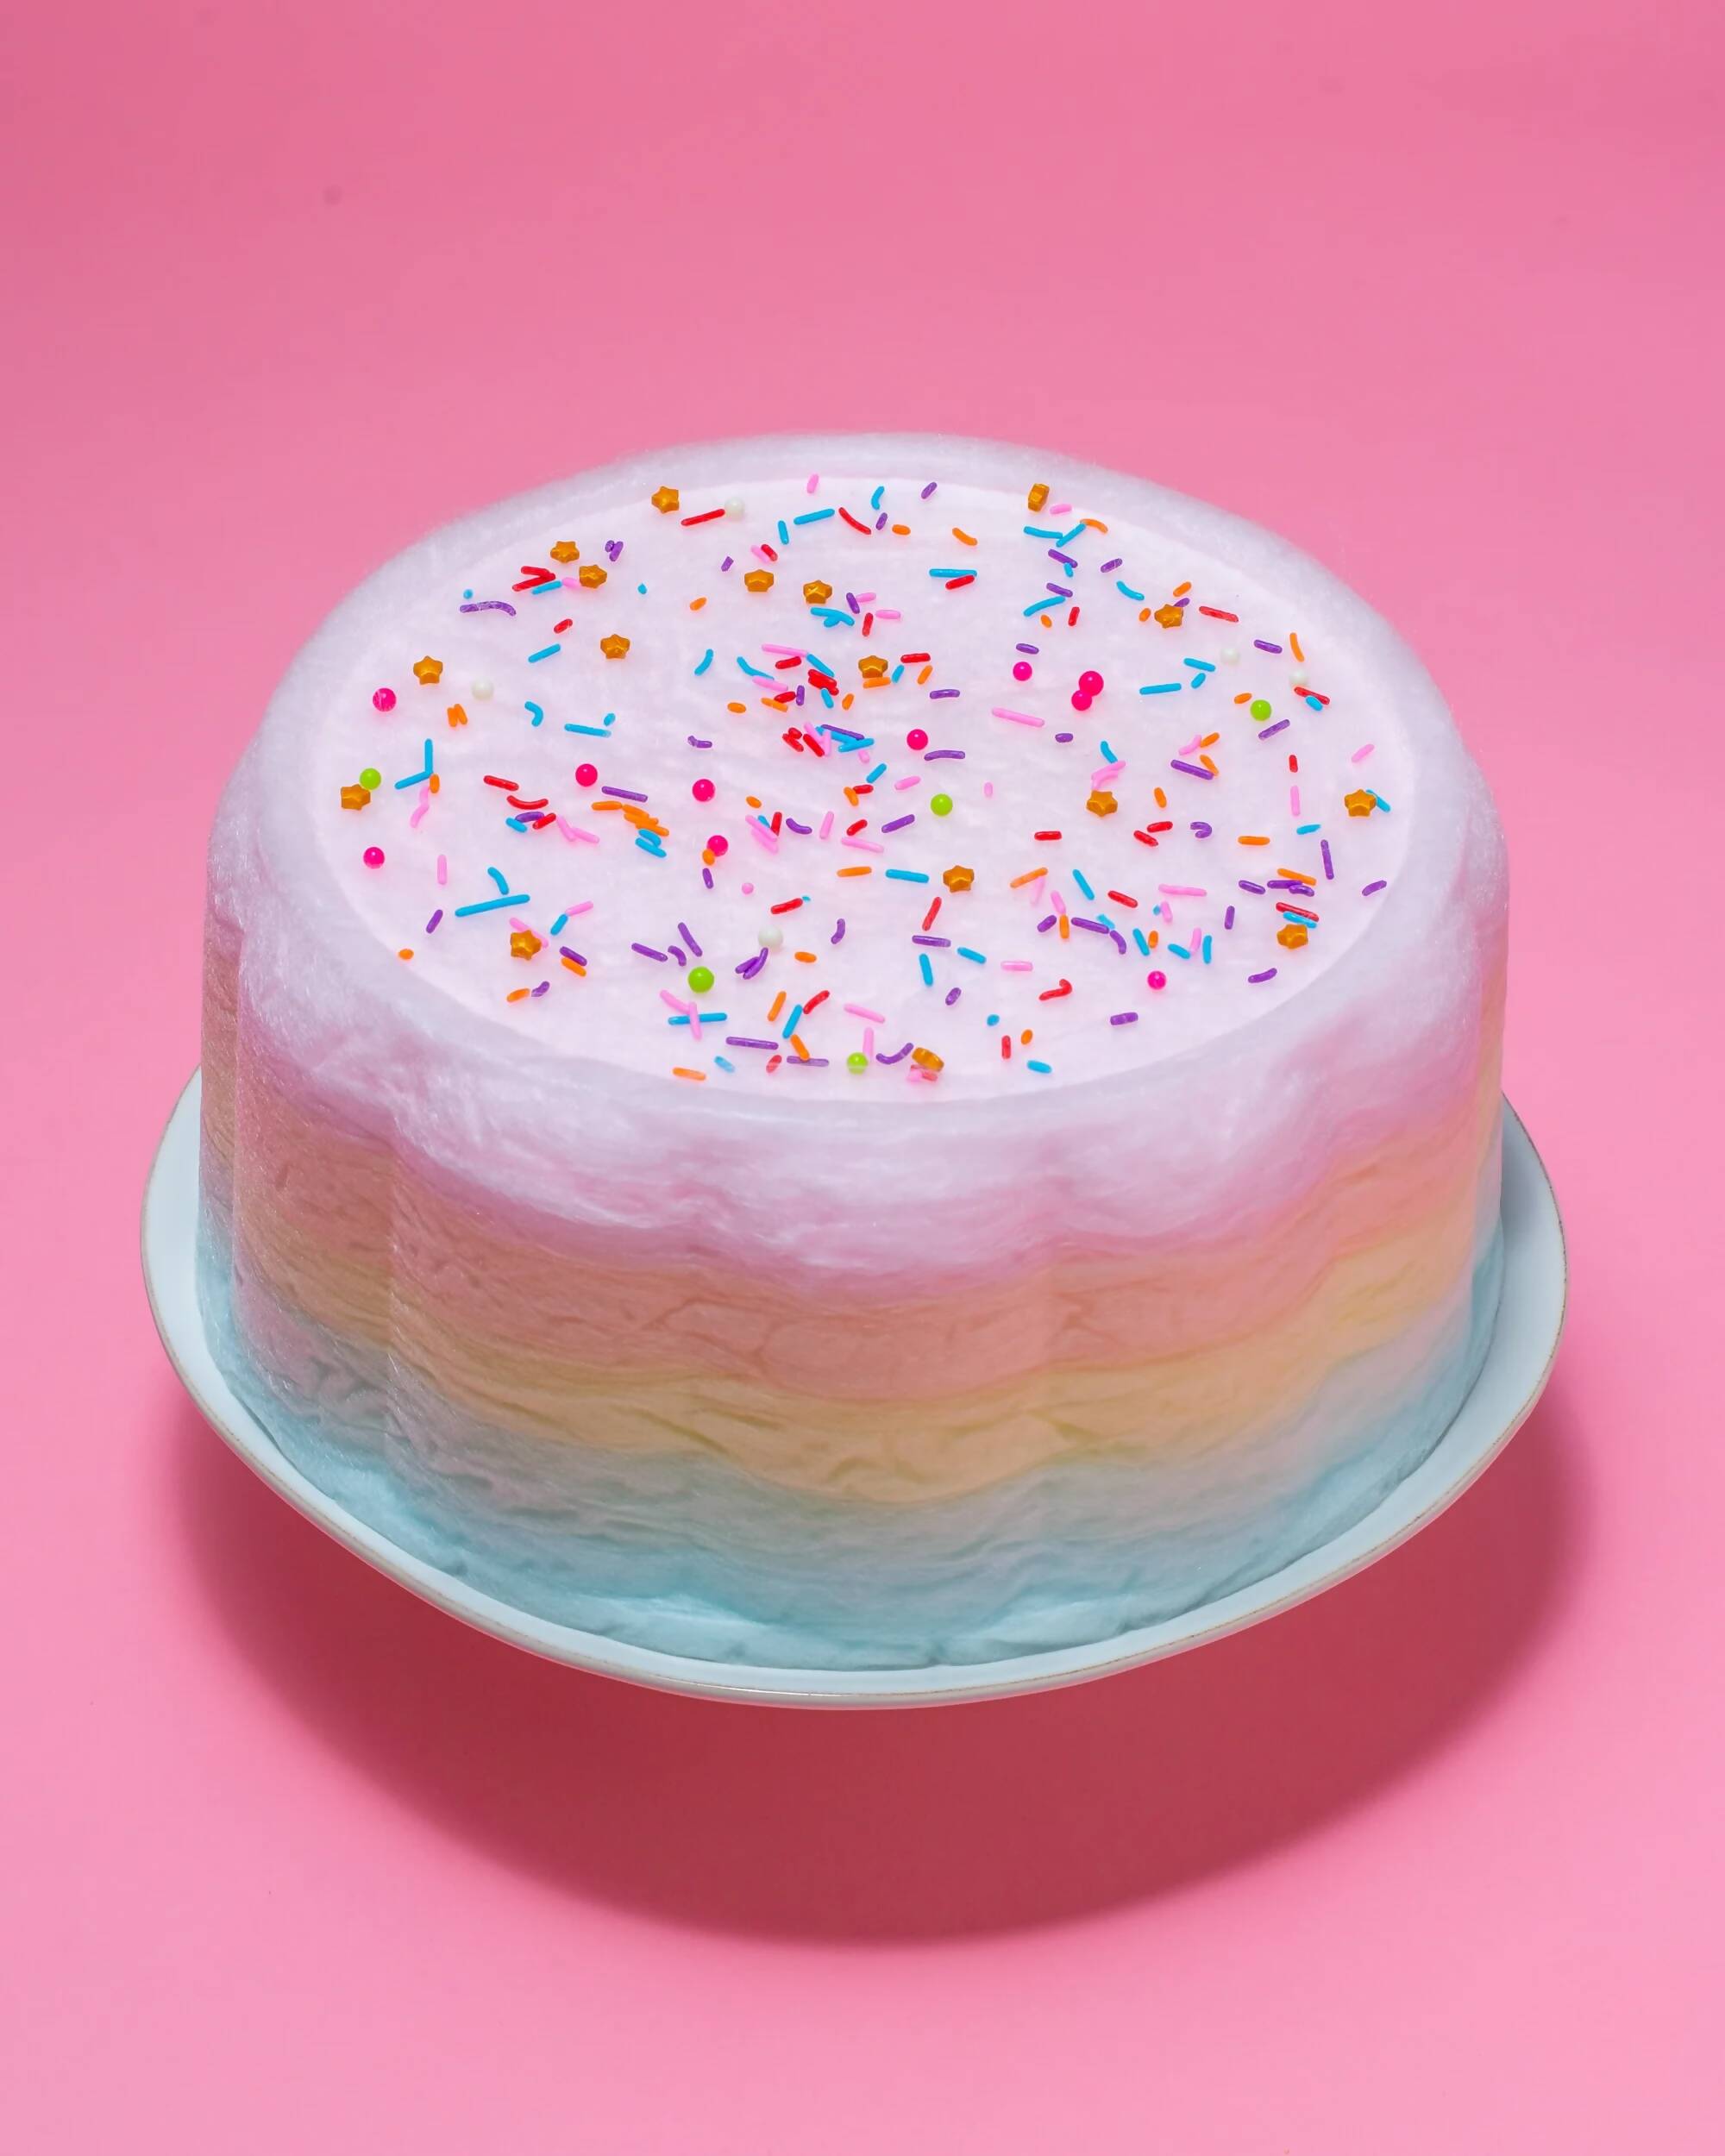 JUMBO RAINBOW FLOOF CAKE-1